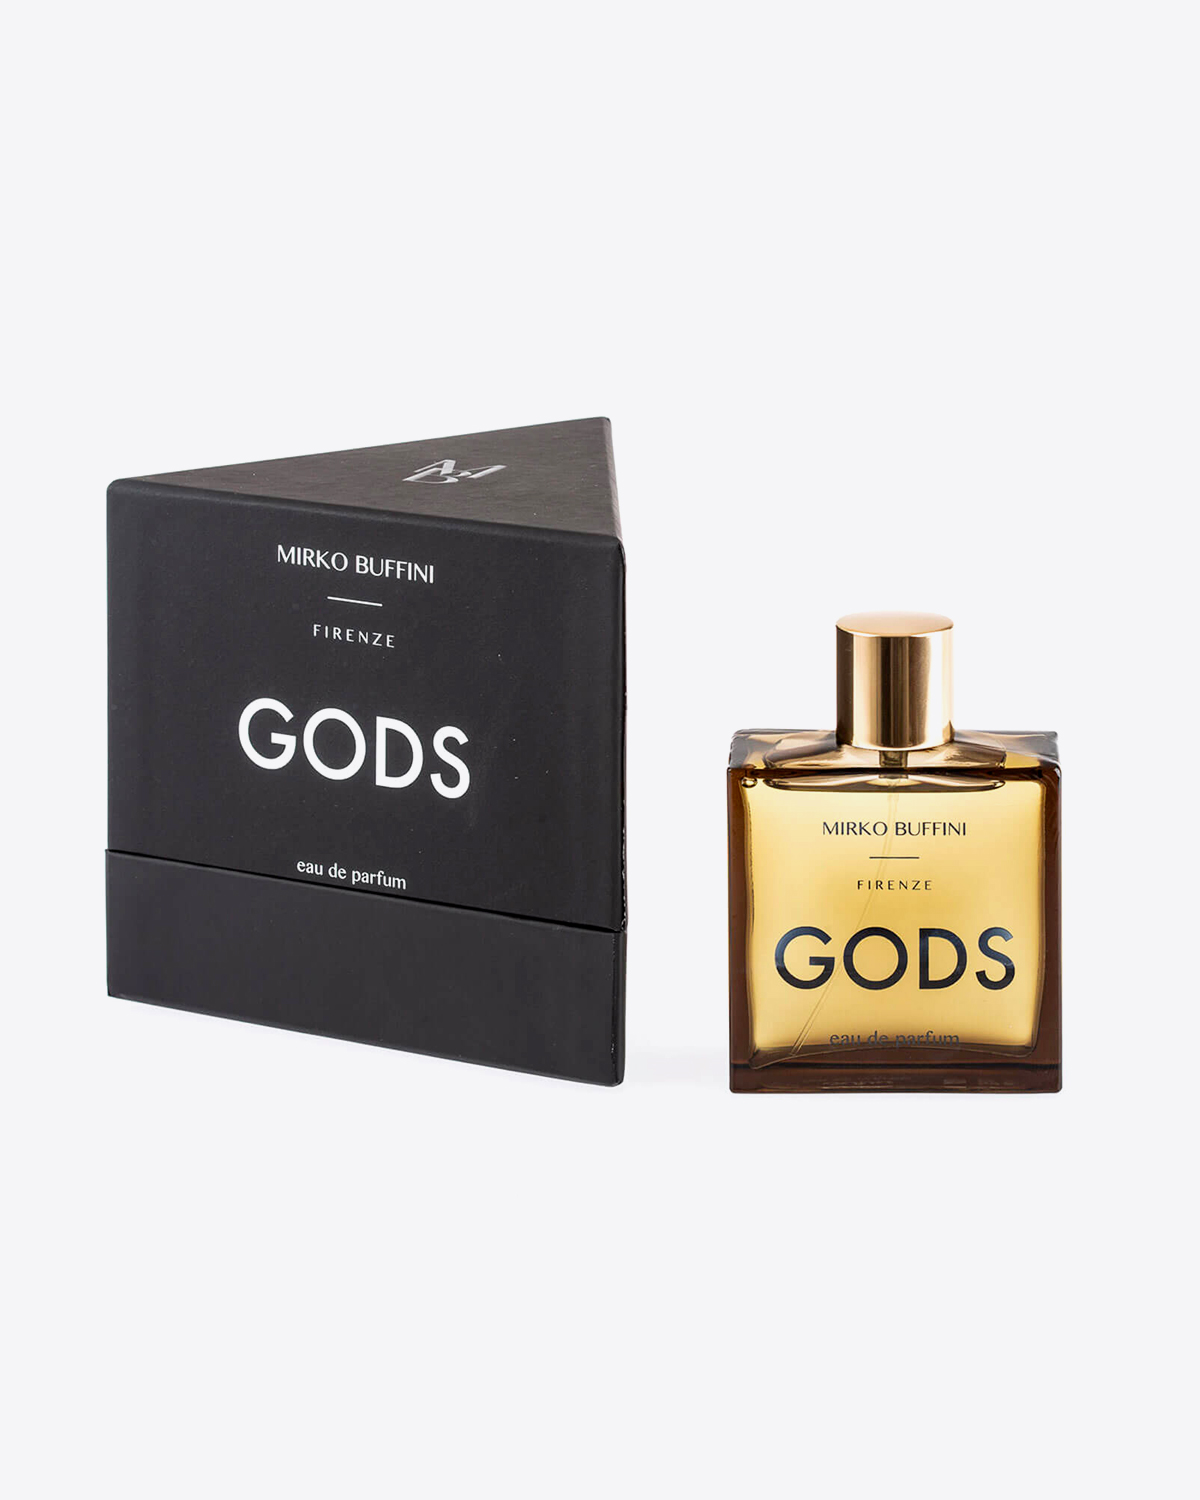 Parfum Gods Mirko Buffini. Flacon de 100 ml vendu avec sa boite triangulaire noire. Collection Black.